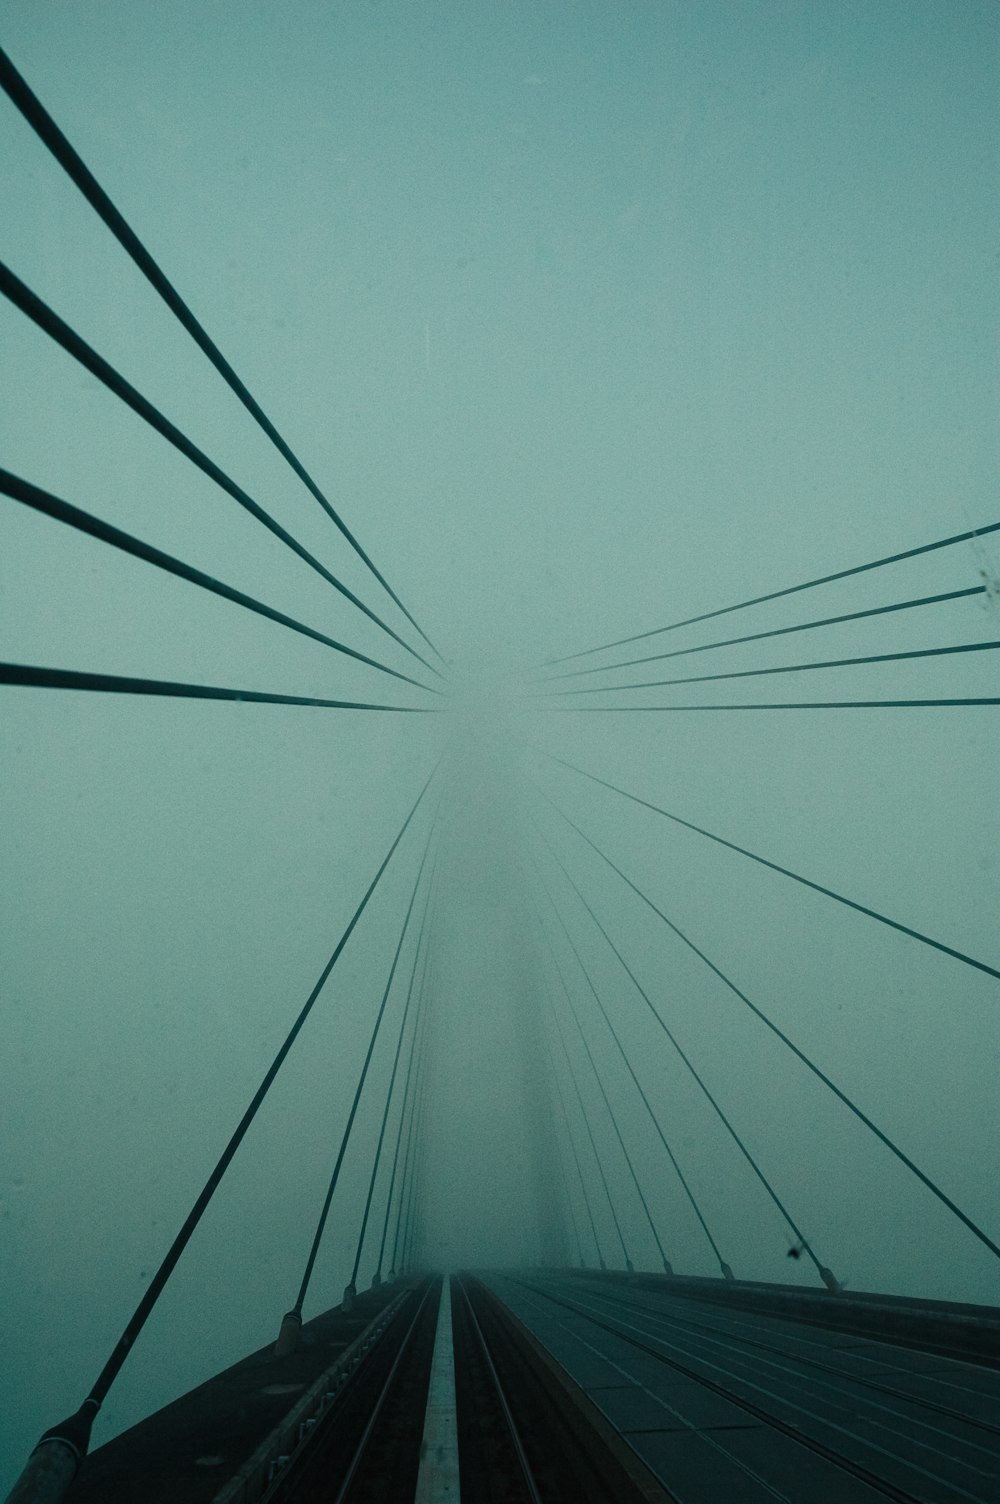 a view of a bridge through a foggy window